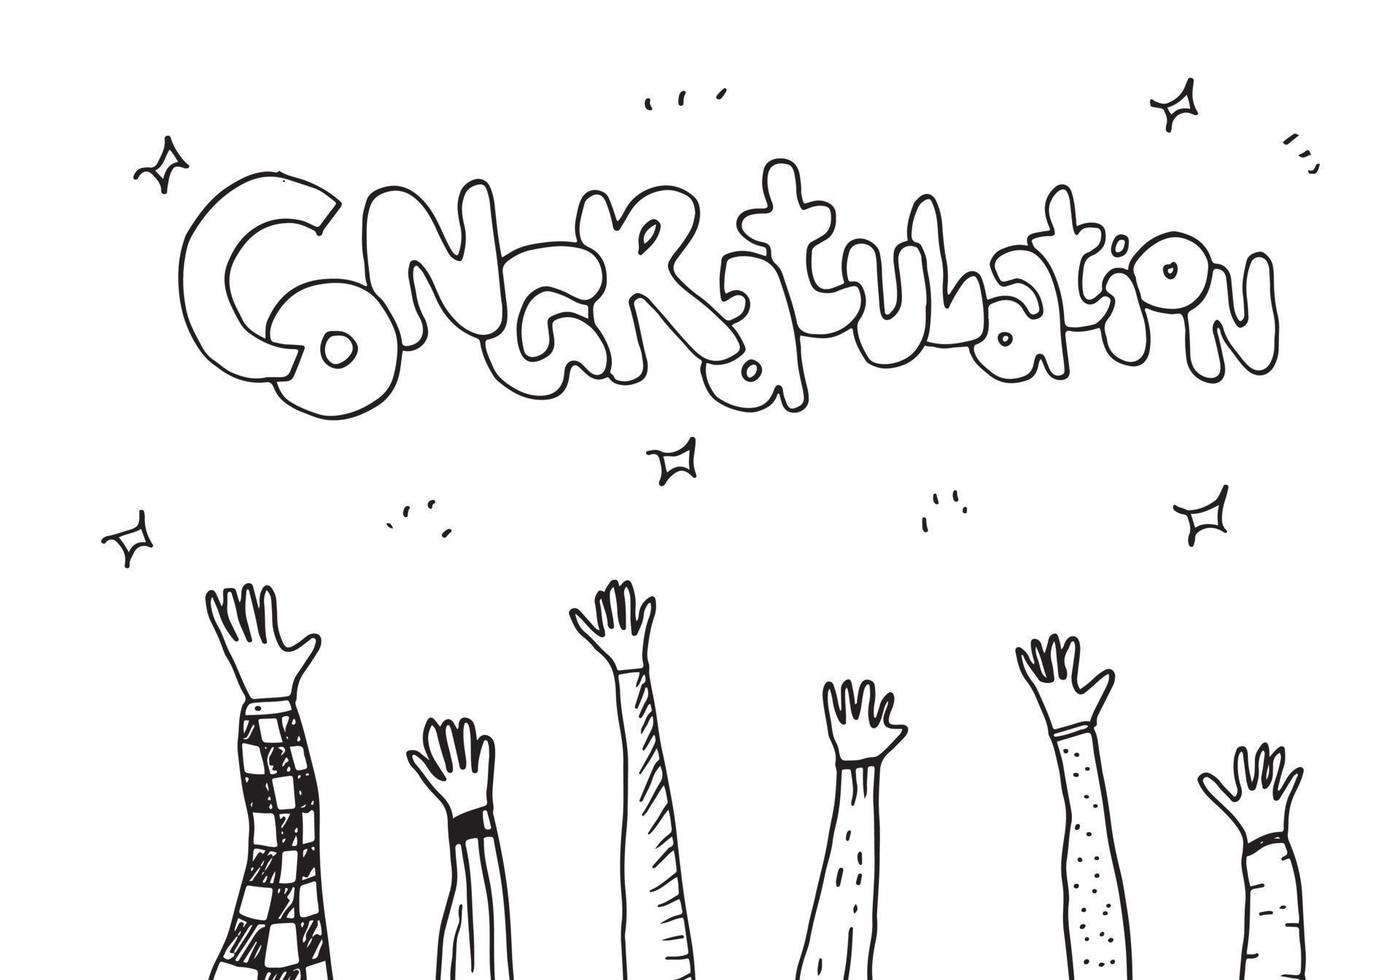 applåder hand rita på vit bakgrund med gratulationer text.vector illustration. vektor